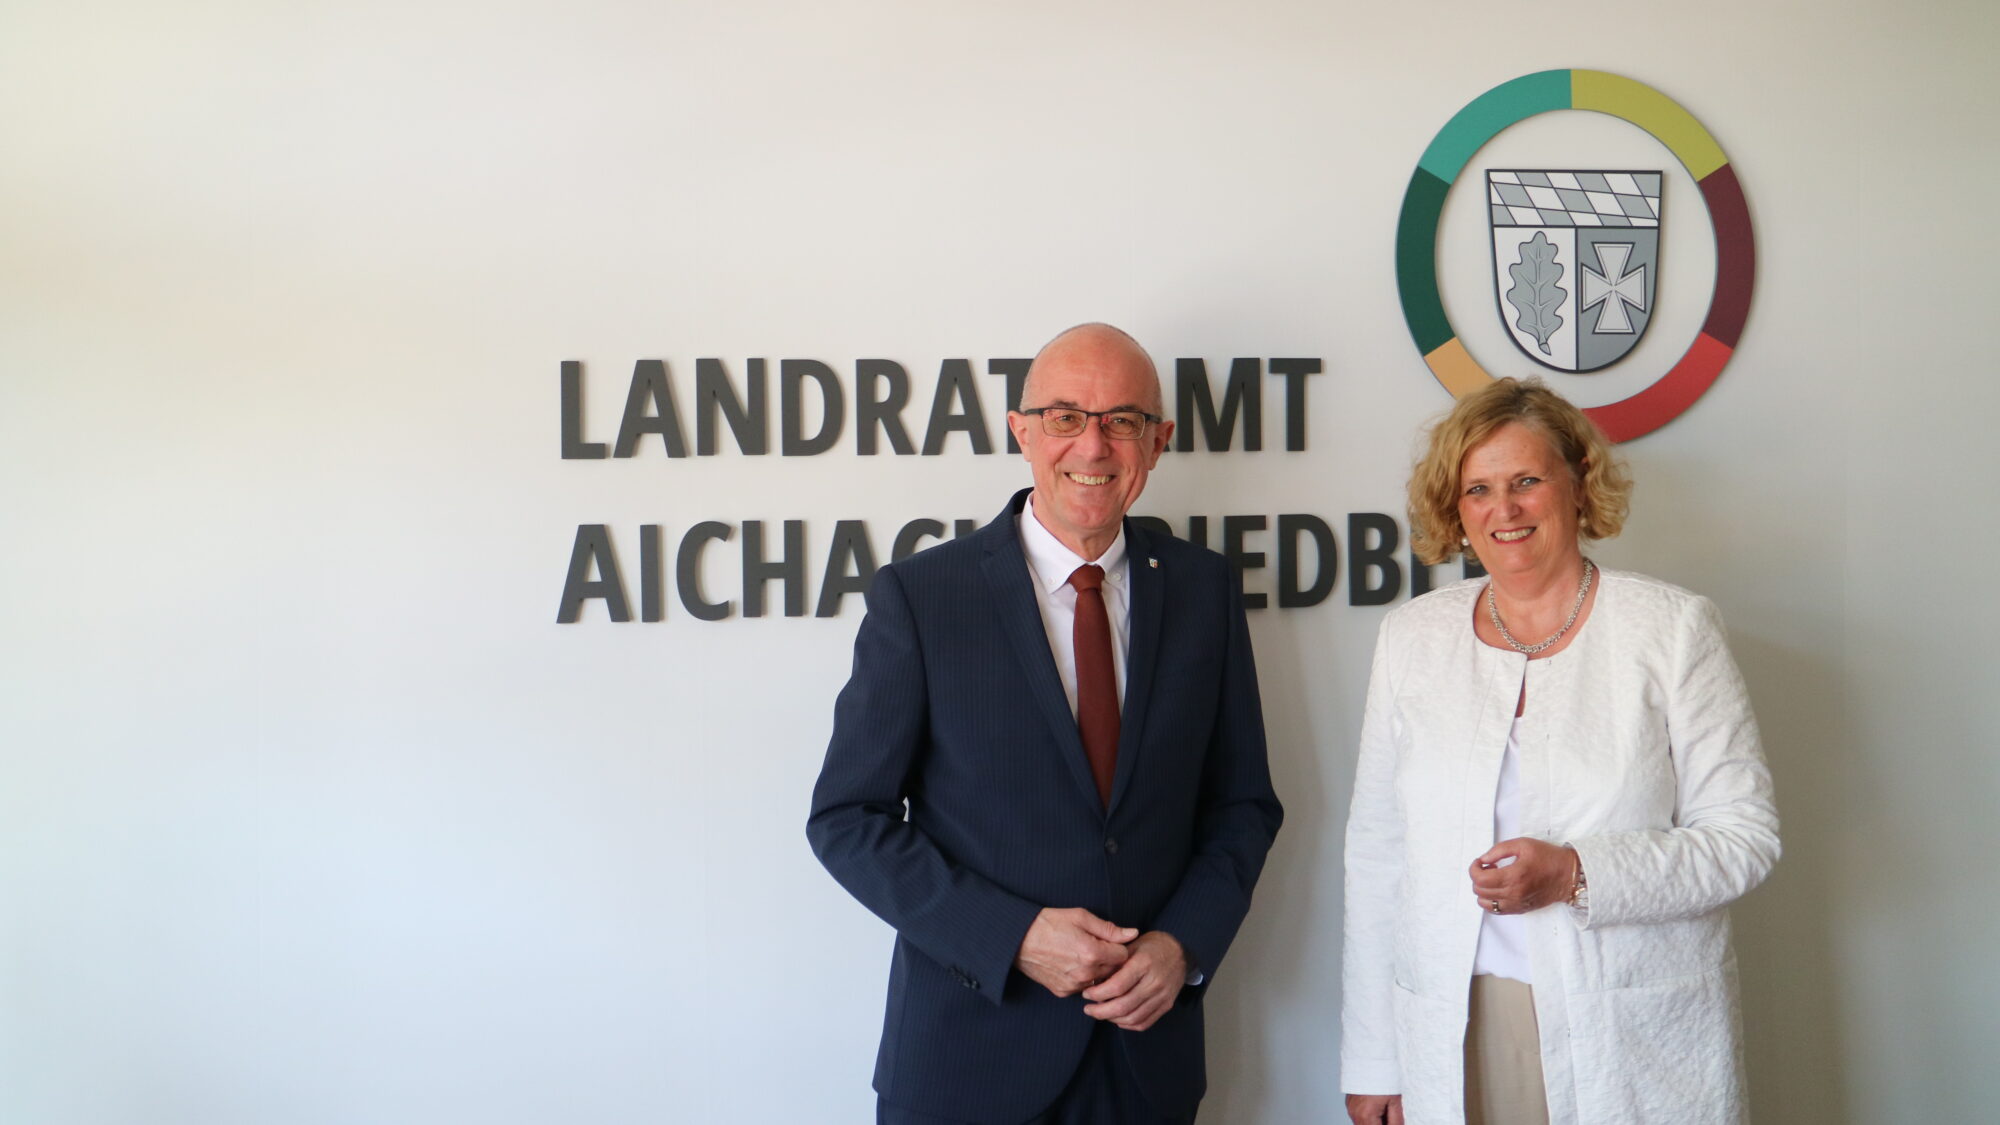 Landrat Dr. Klaus Metzger (links) und Regierungspräsidentin Barbara Schrettler (rechts) freuten sich auf ihr Kennenlernen und stehen hier auf dem Bild vor dem Landratsamtslogo.